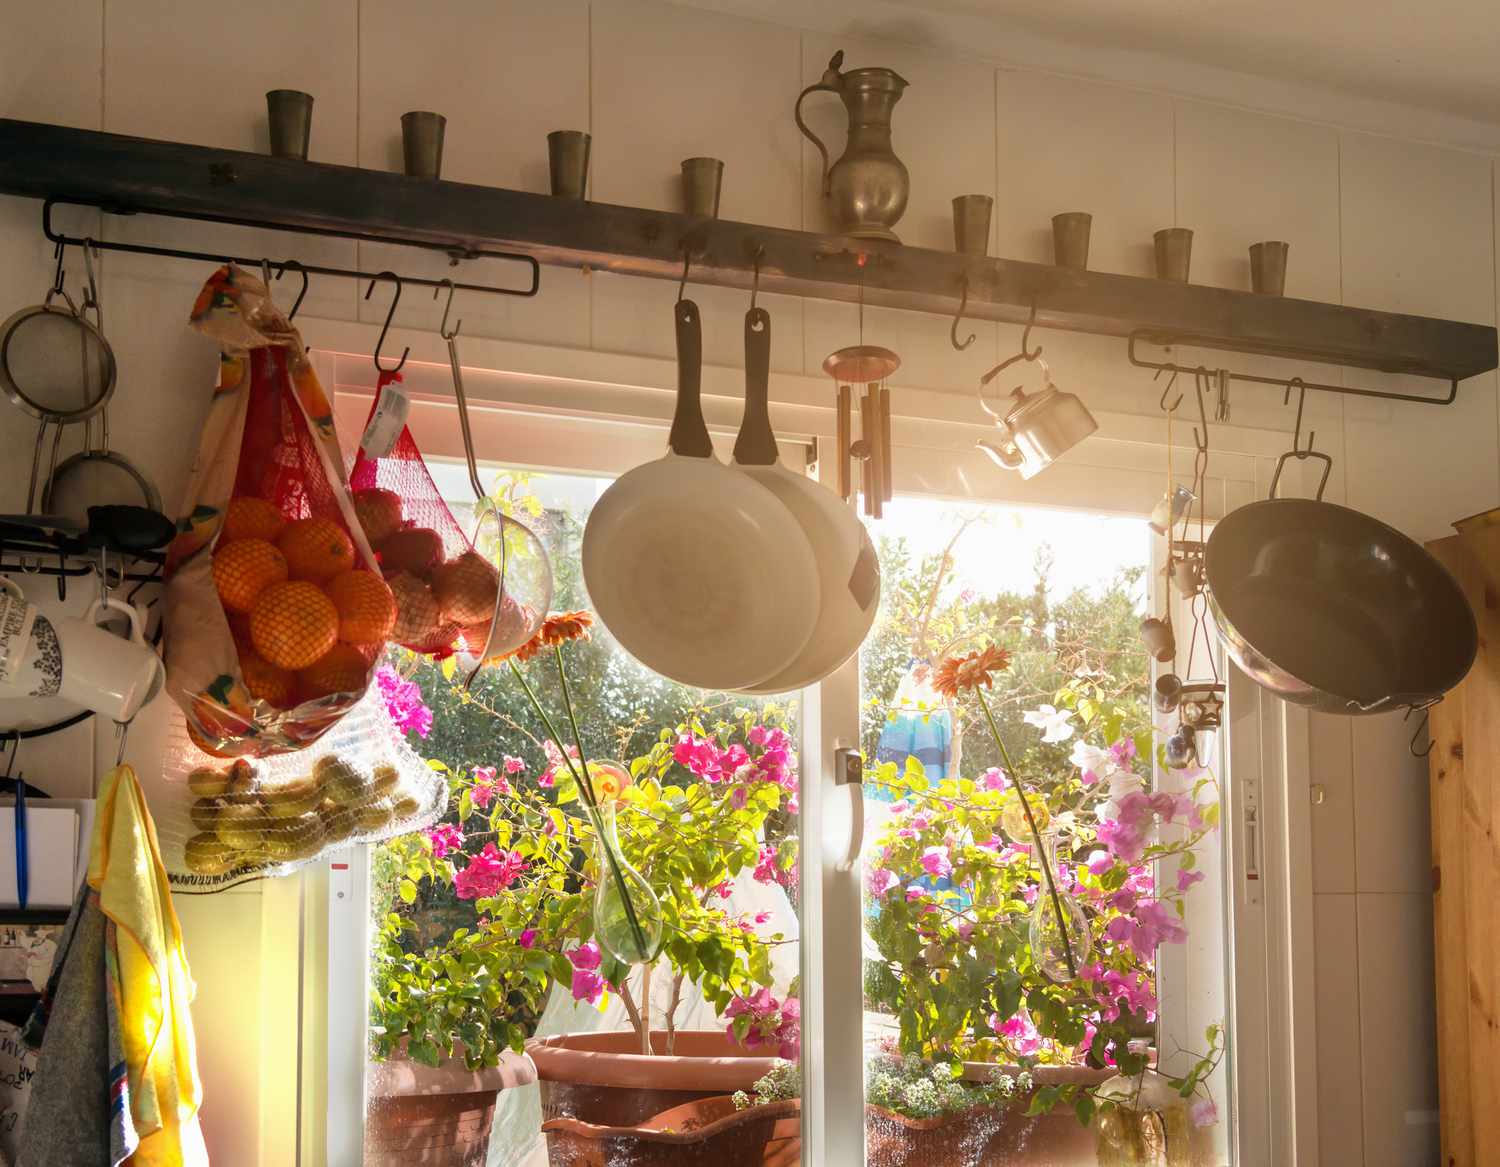 Janela interna de uma cozinha de verão, decorada com vários itens de cozinha e vasos de plantas no parapeito da janela